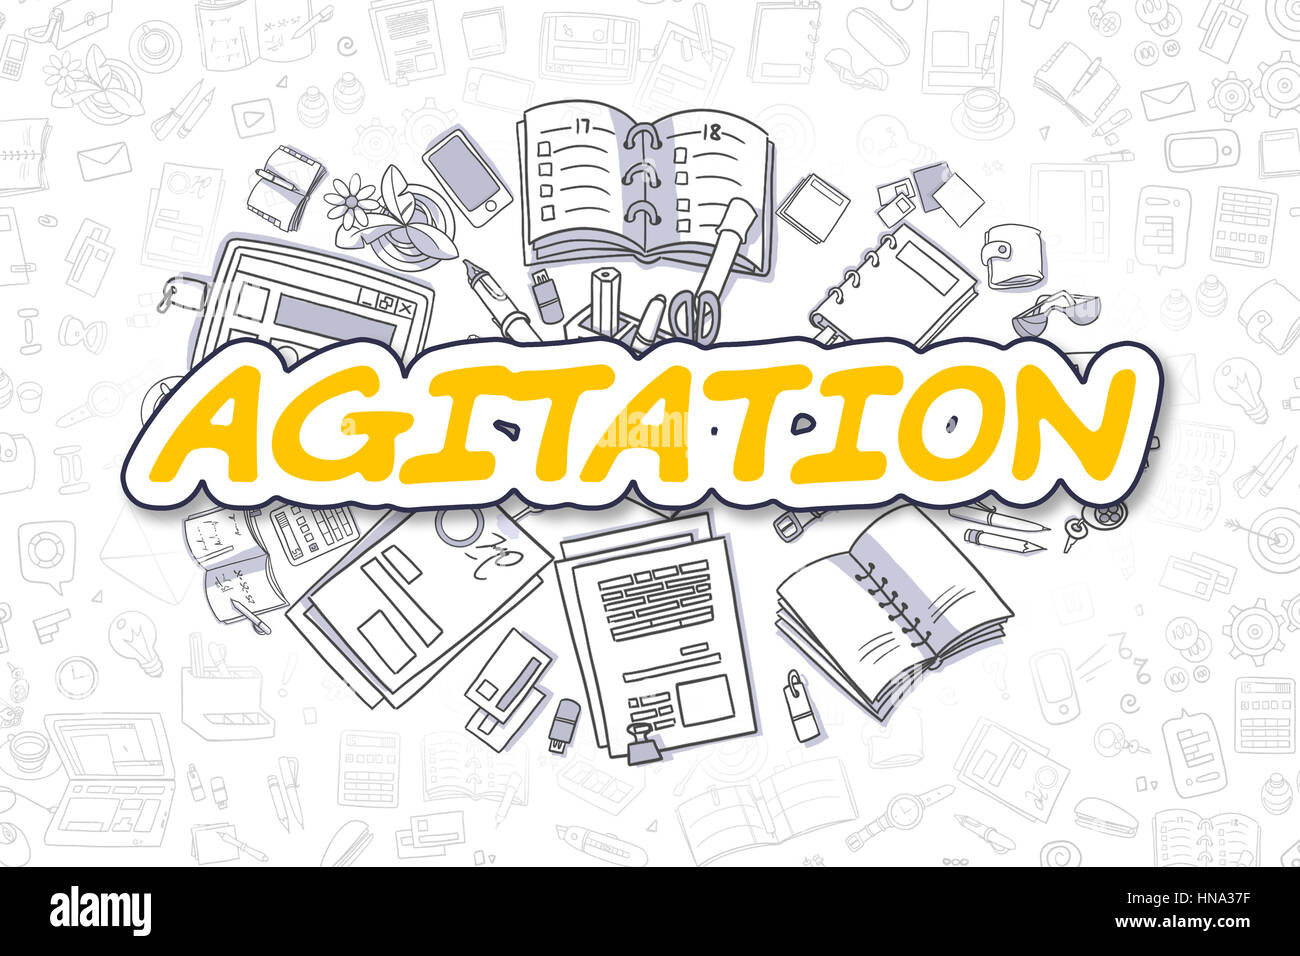 Doodle - Agitation mot jaune. Concept d'entreprise. Banque D'Images